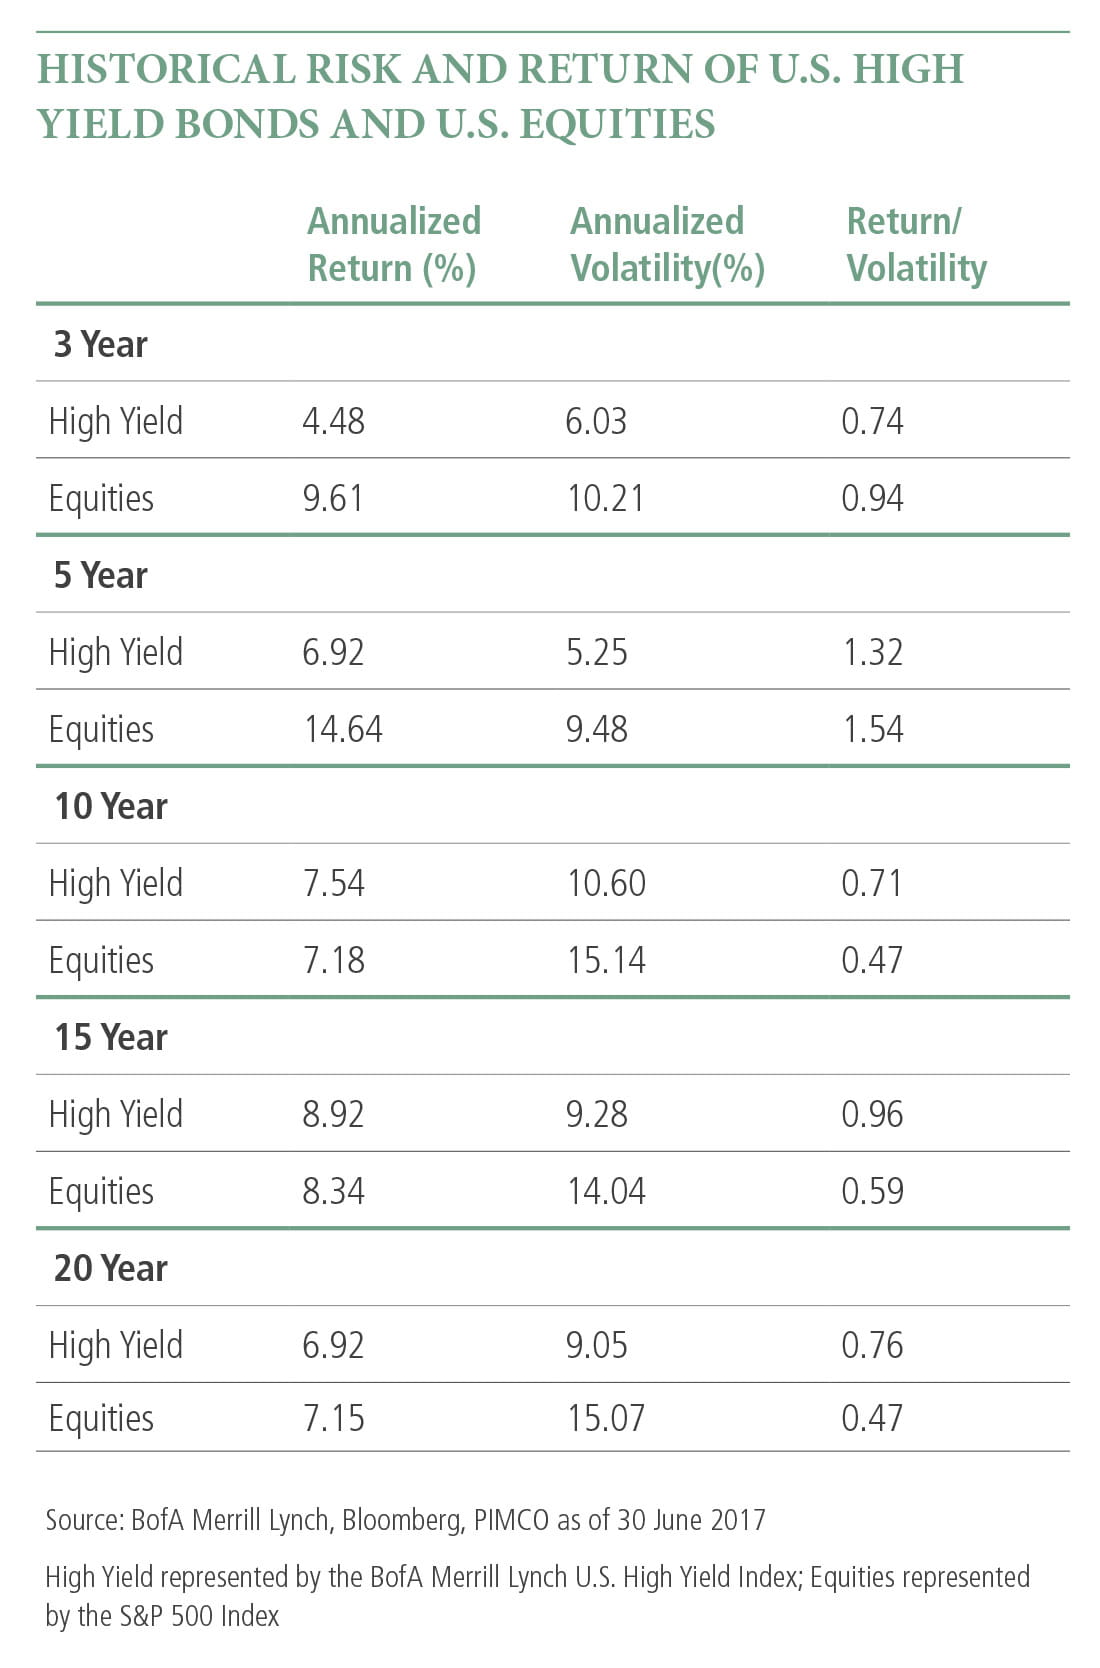 이 표는 3년, 5년, 10년, 15년 및 20년 동안 BoFA Merrill Lynch U.S. High Yield Index와 S&P 500 Index의 과거 위험 및 연간 수익률을 비교합니다. 